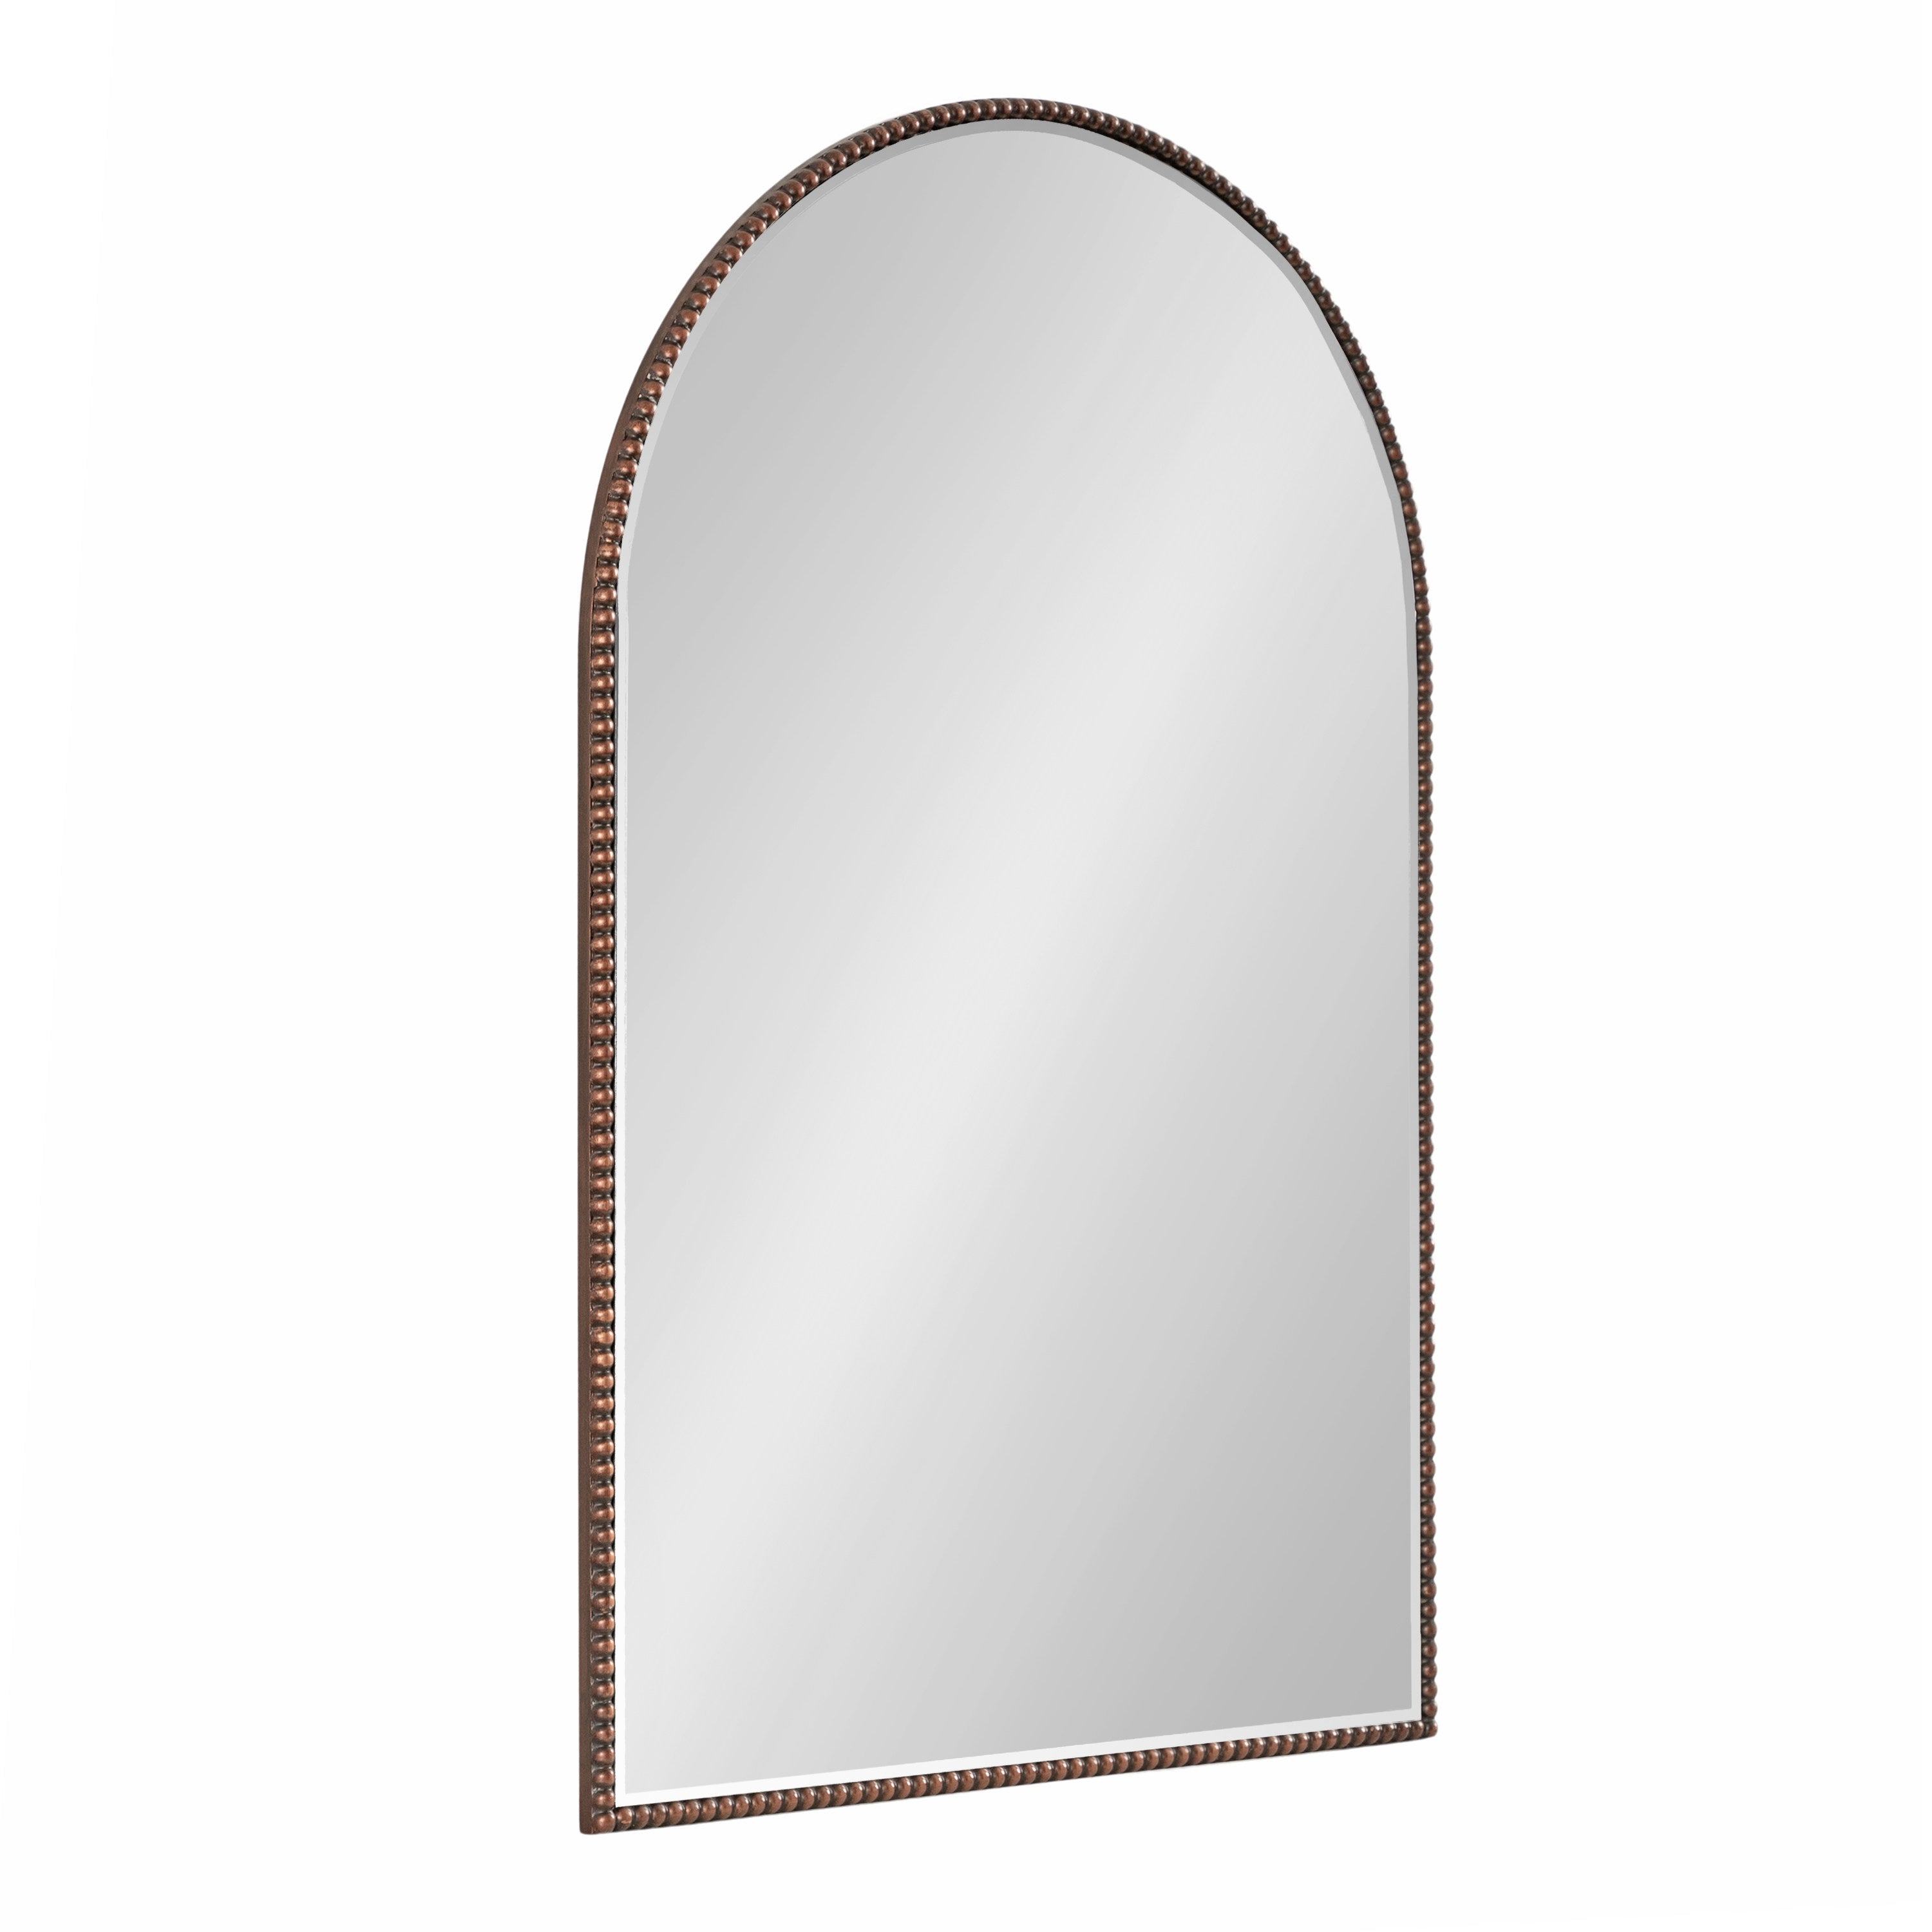 Gwendolyn Arch Wall Mirror